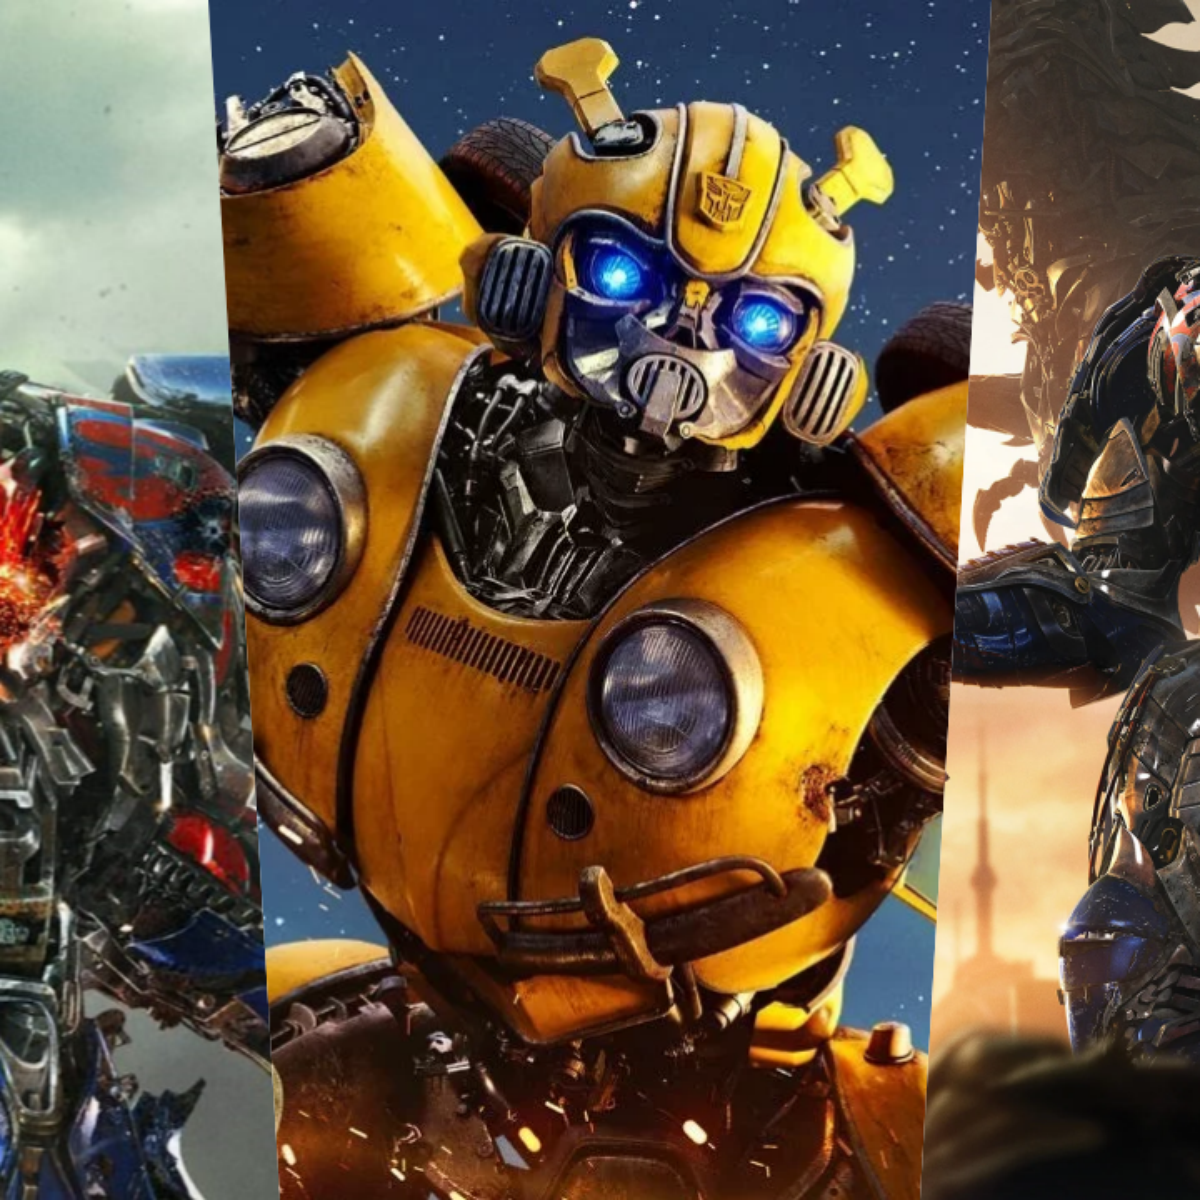 Transformers 7” já tem título oficial e data de estreia